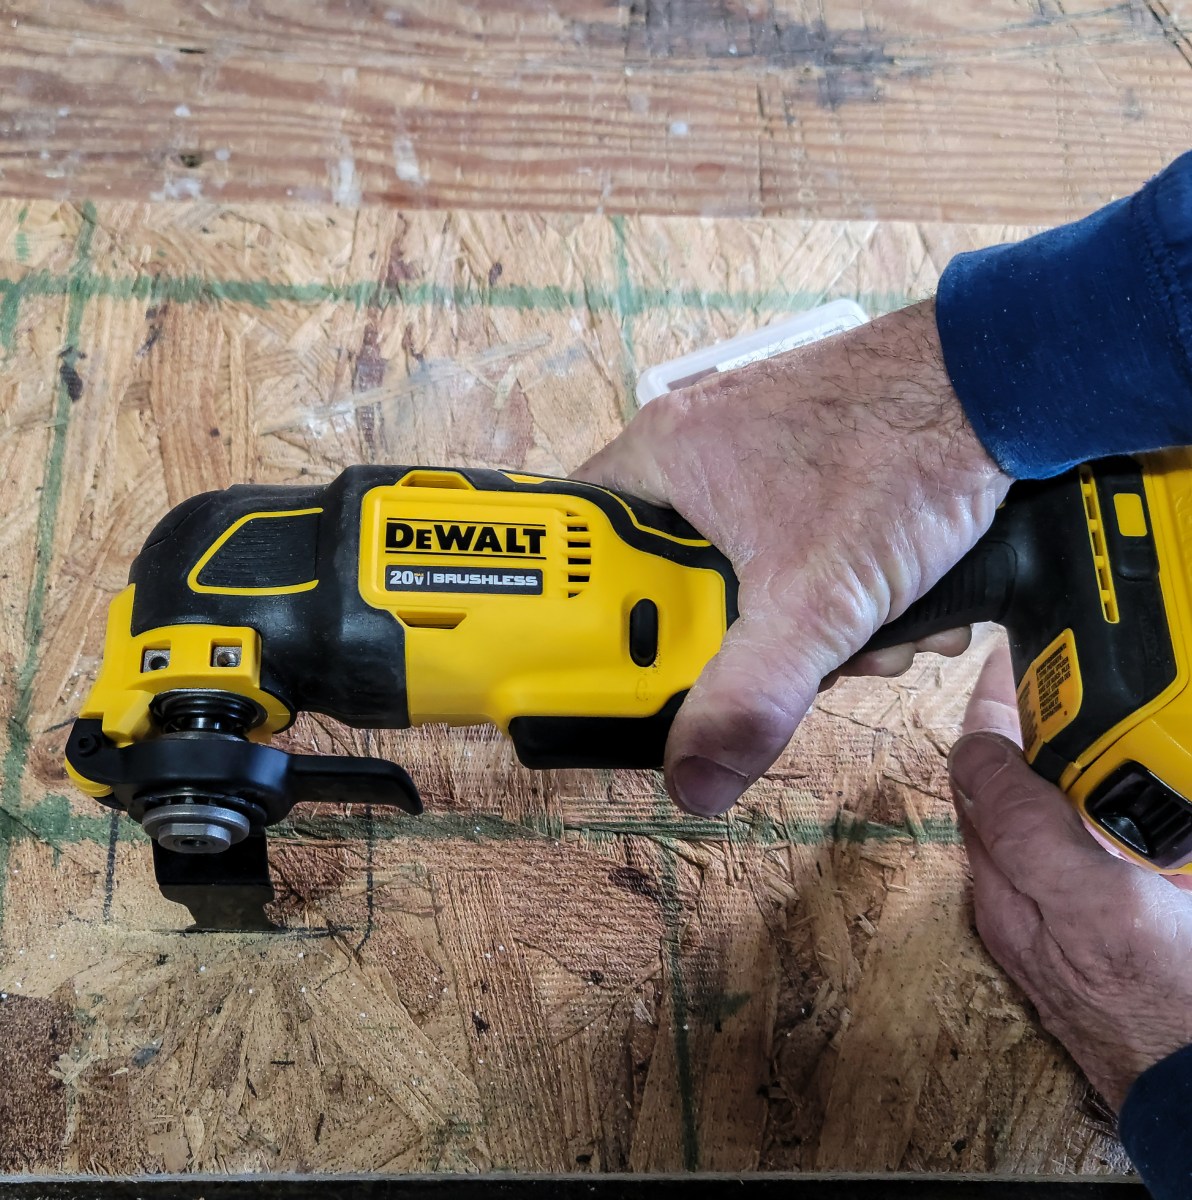 Dewalt oscillating tool cutting through plywood